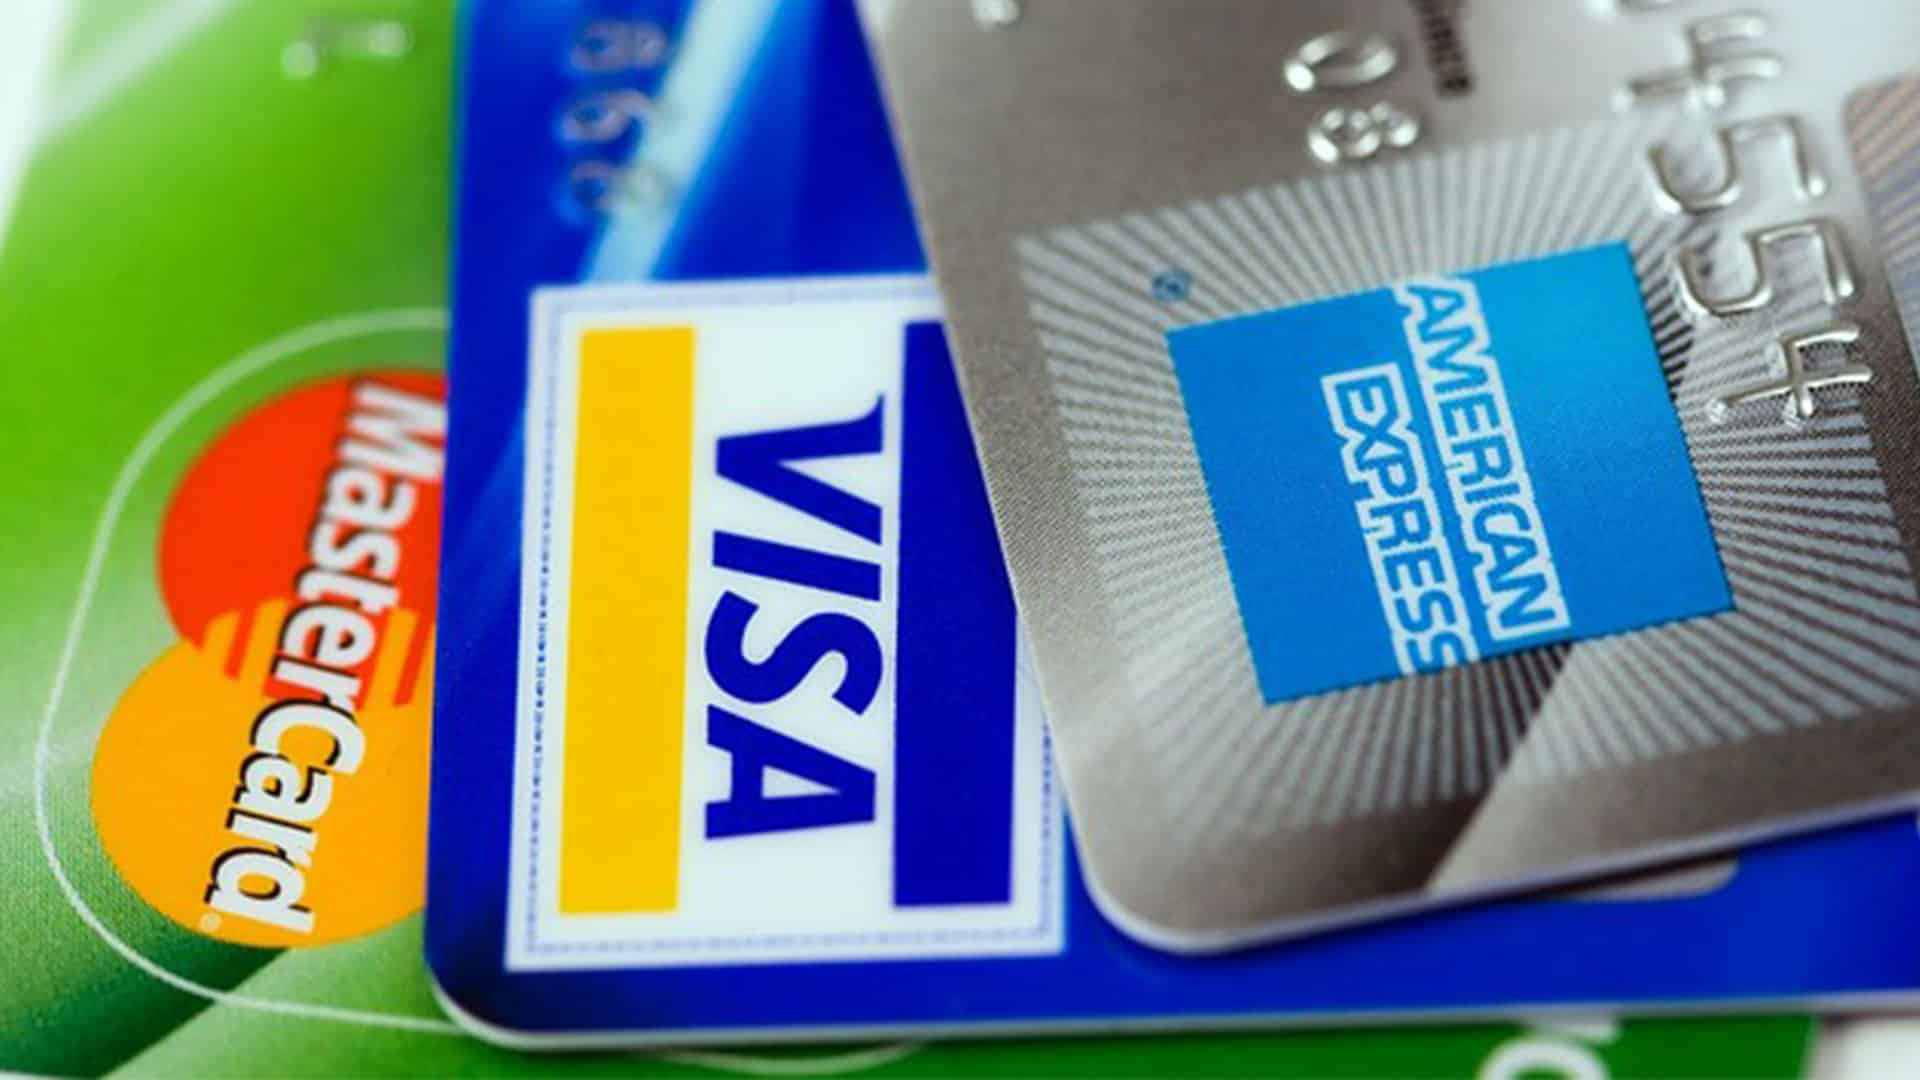 Mastercard, Visa and American Express credit cards